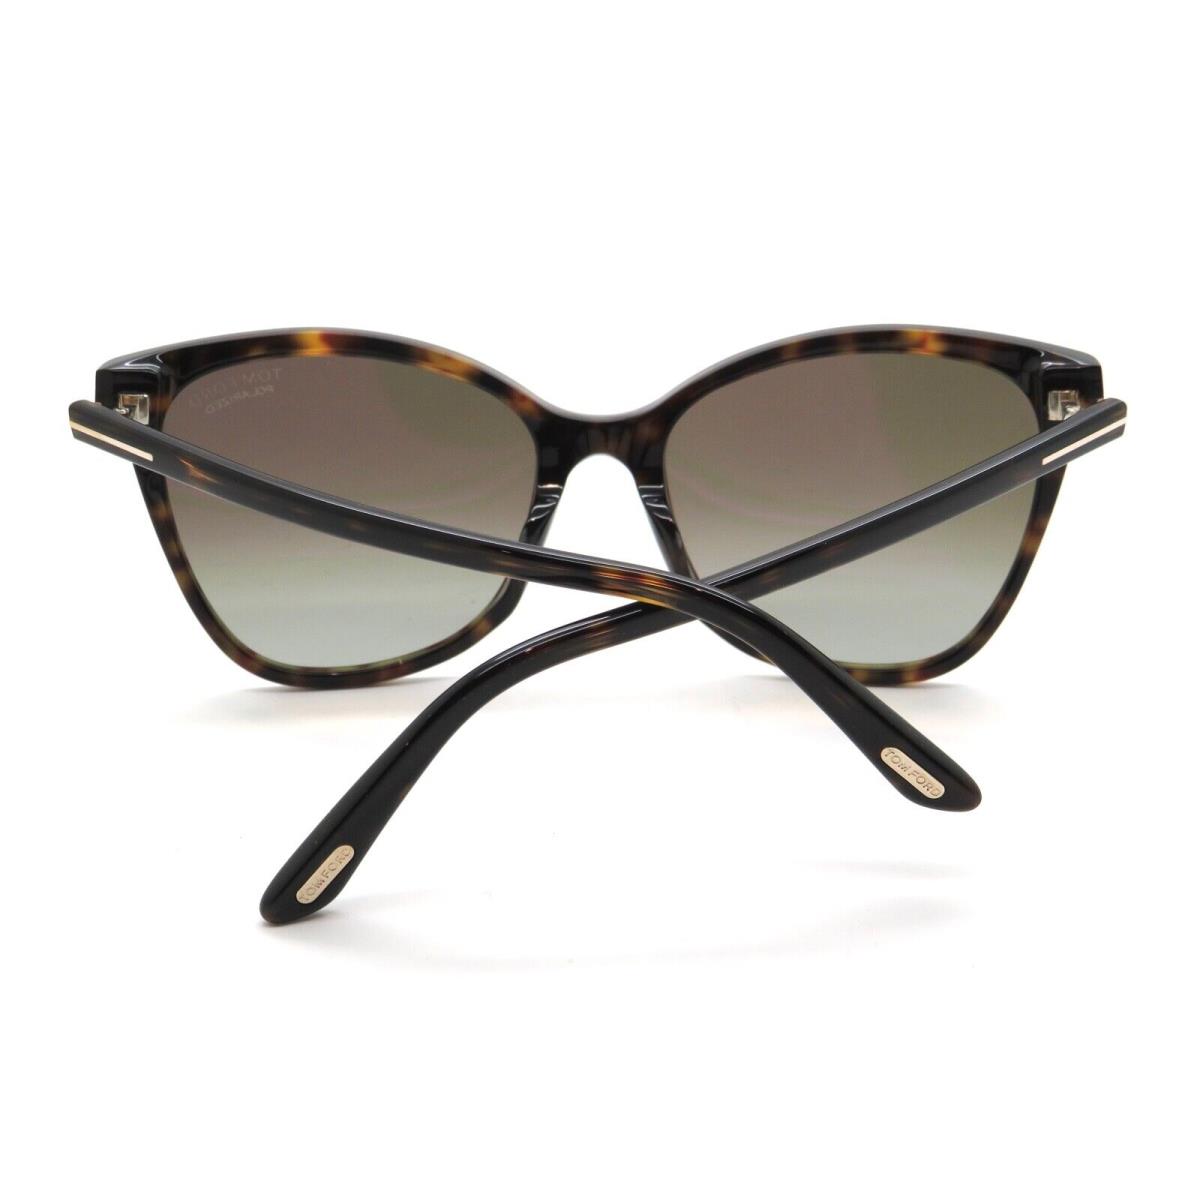 Tom Ford sunglasses Ani - Havana Tortoise Frame, Brown Gradient Lens 1